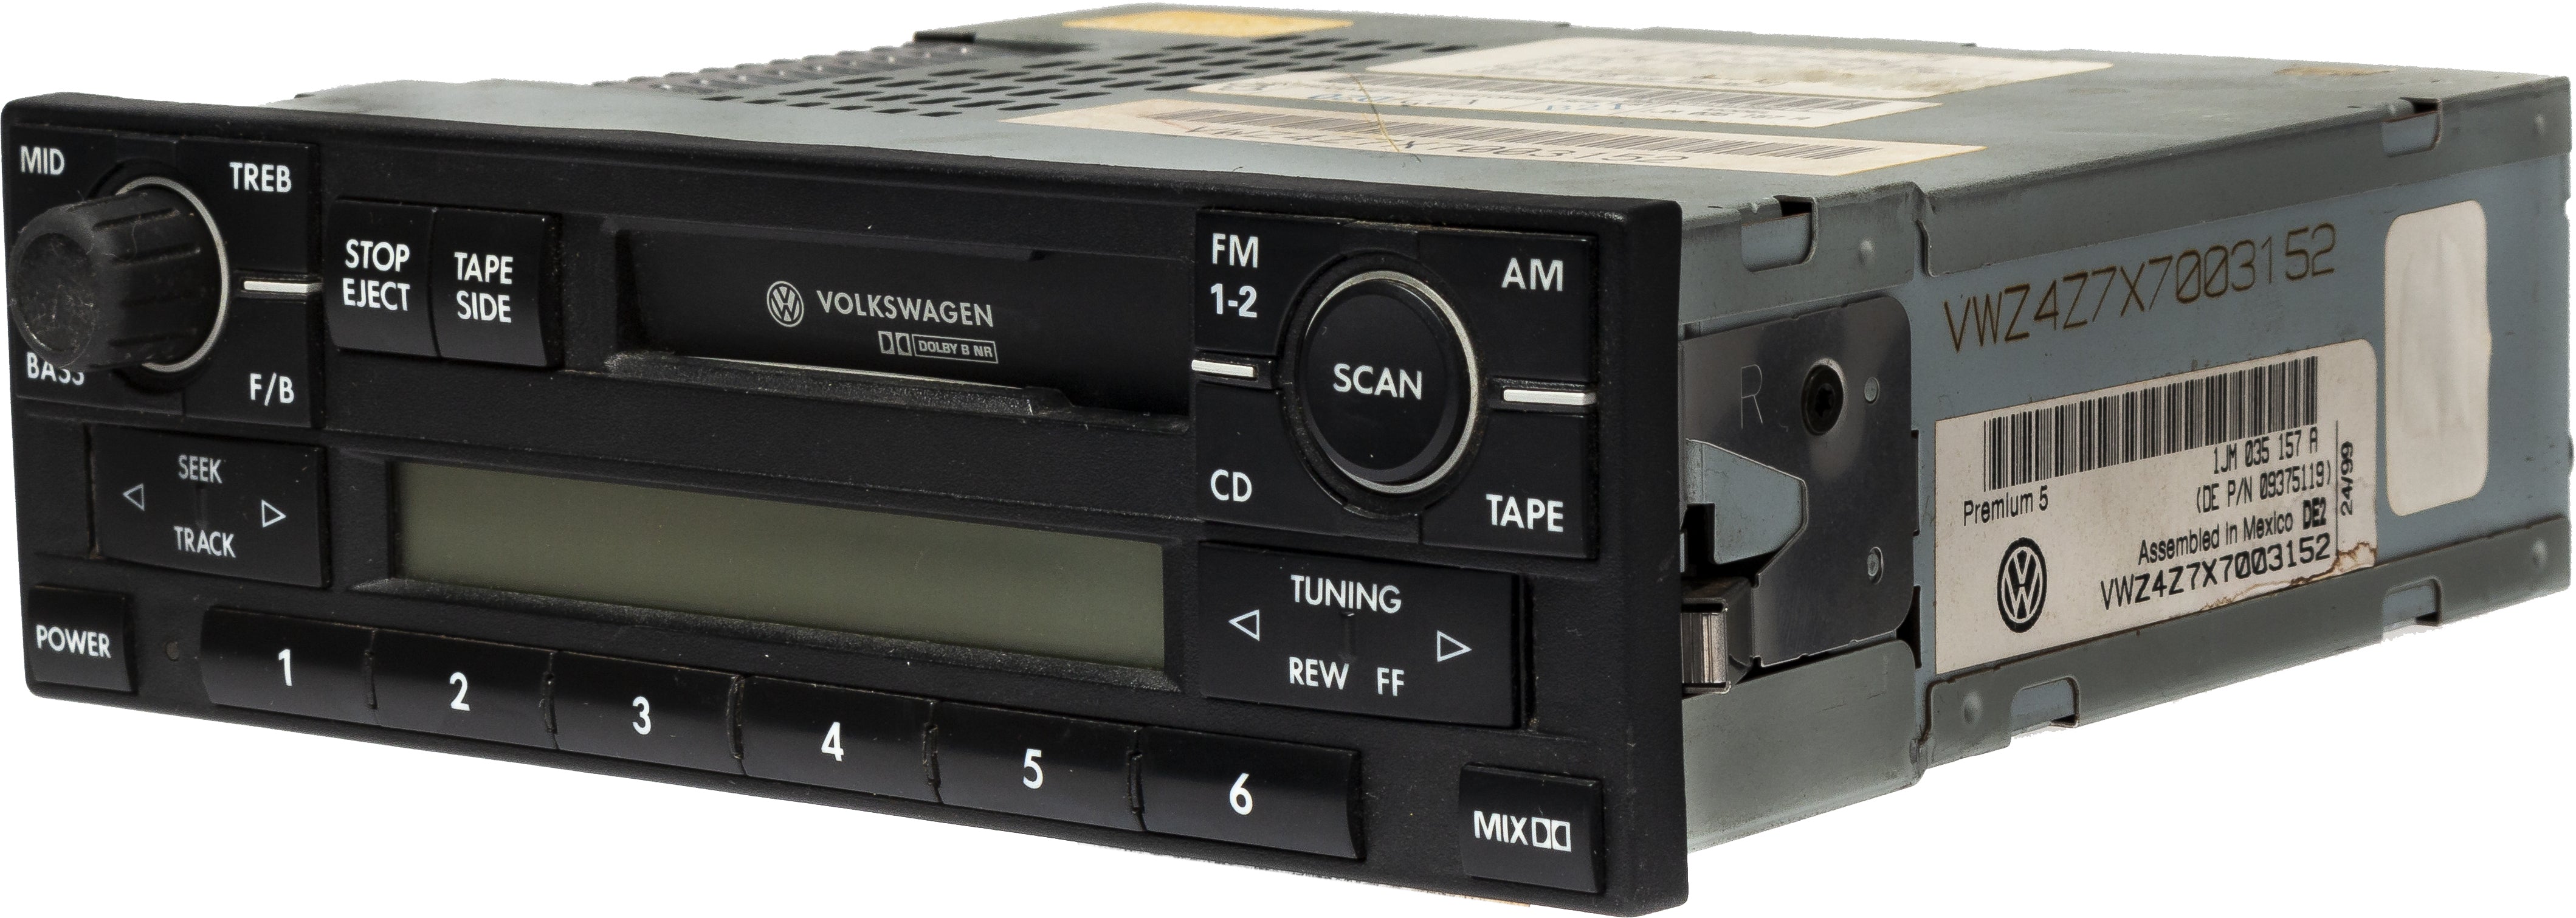 1999-2009 Volkswagen Golf AM FM Radio Receiver Cassette Player Model 1 –  1factoryradio